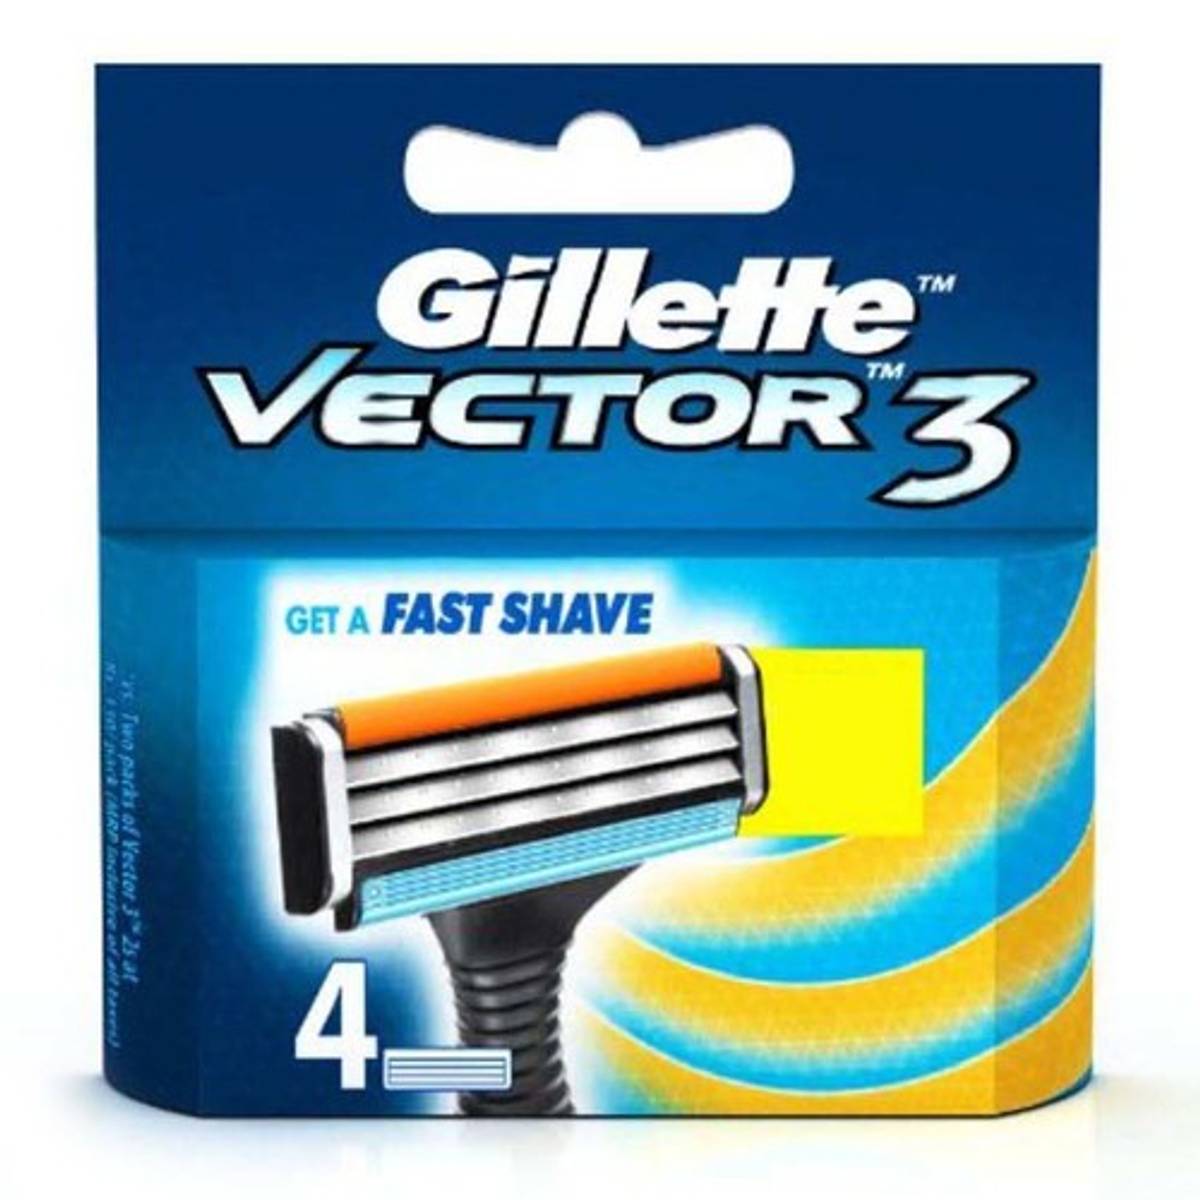 Gillette Vector 3 Razor Blade (4 Refills)